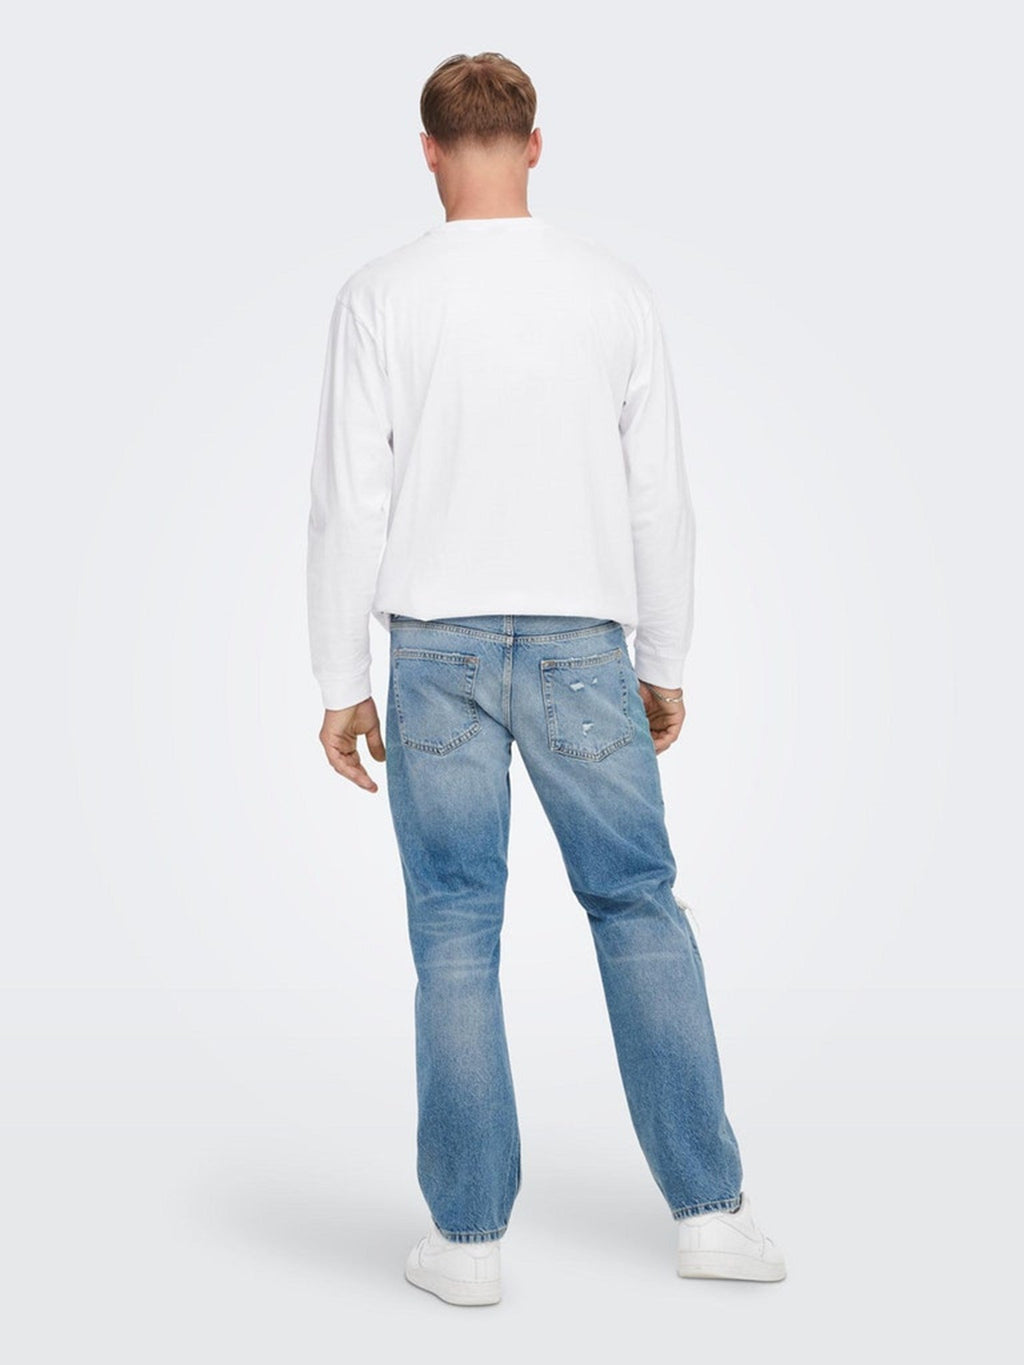 Jeans sueltos de borde - mezclilla azul claro